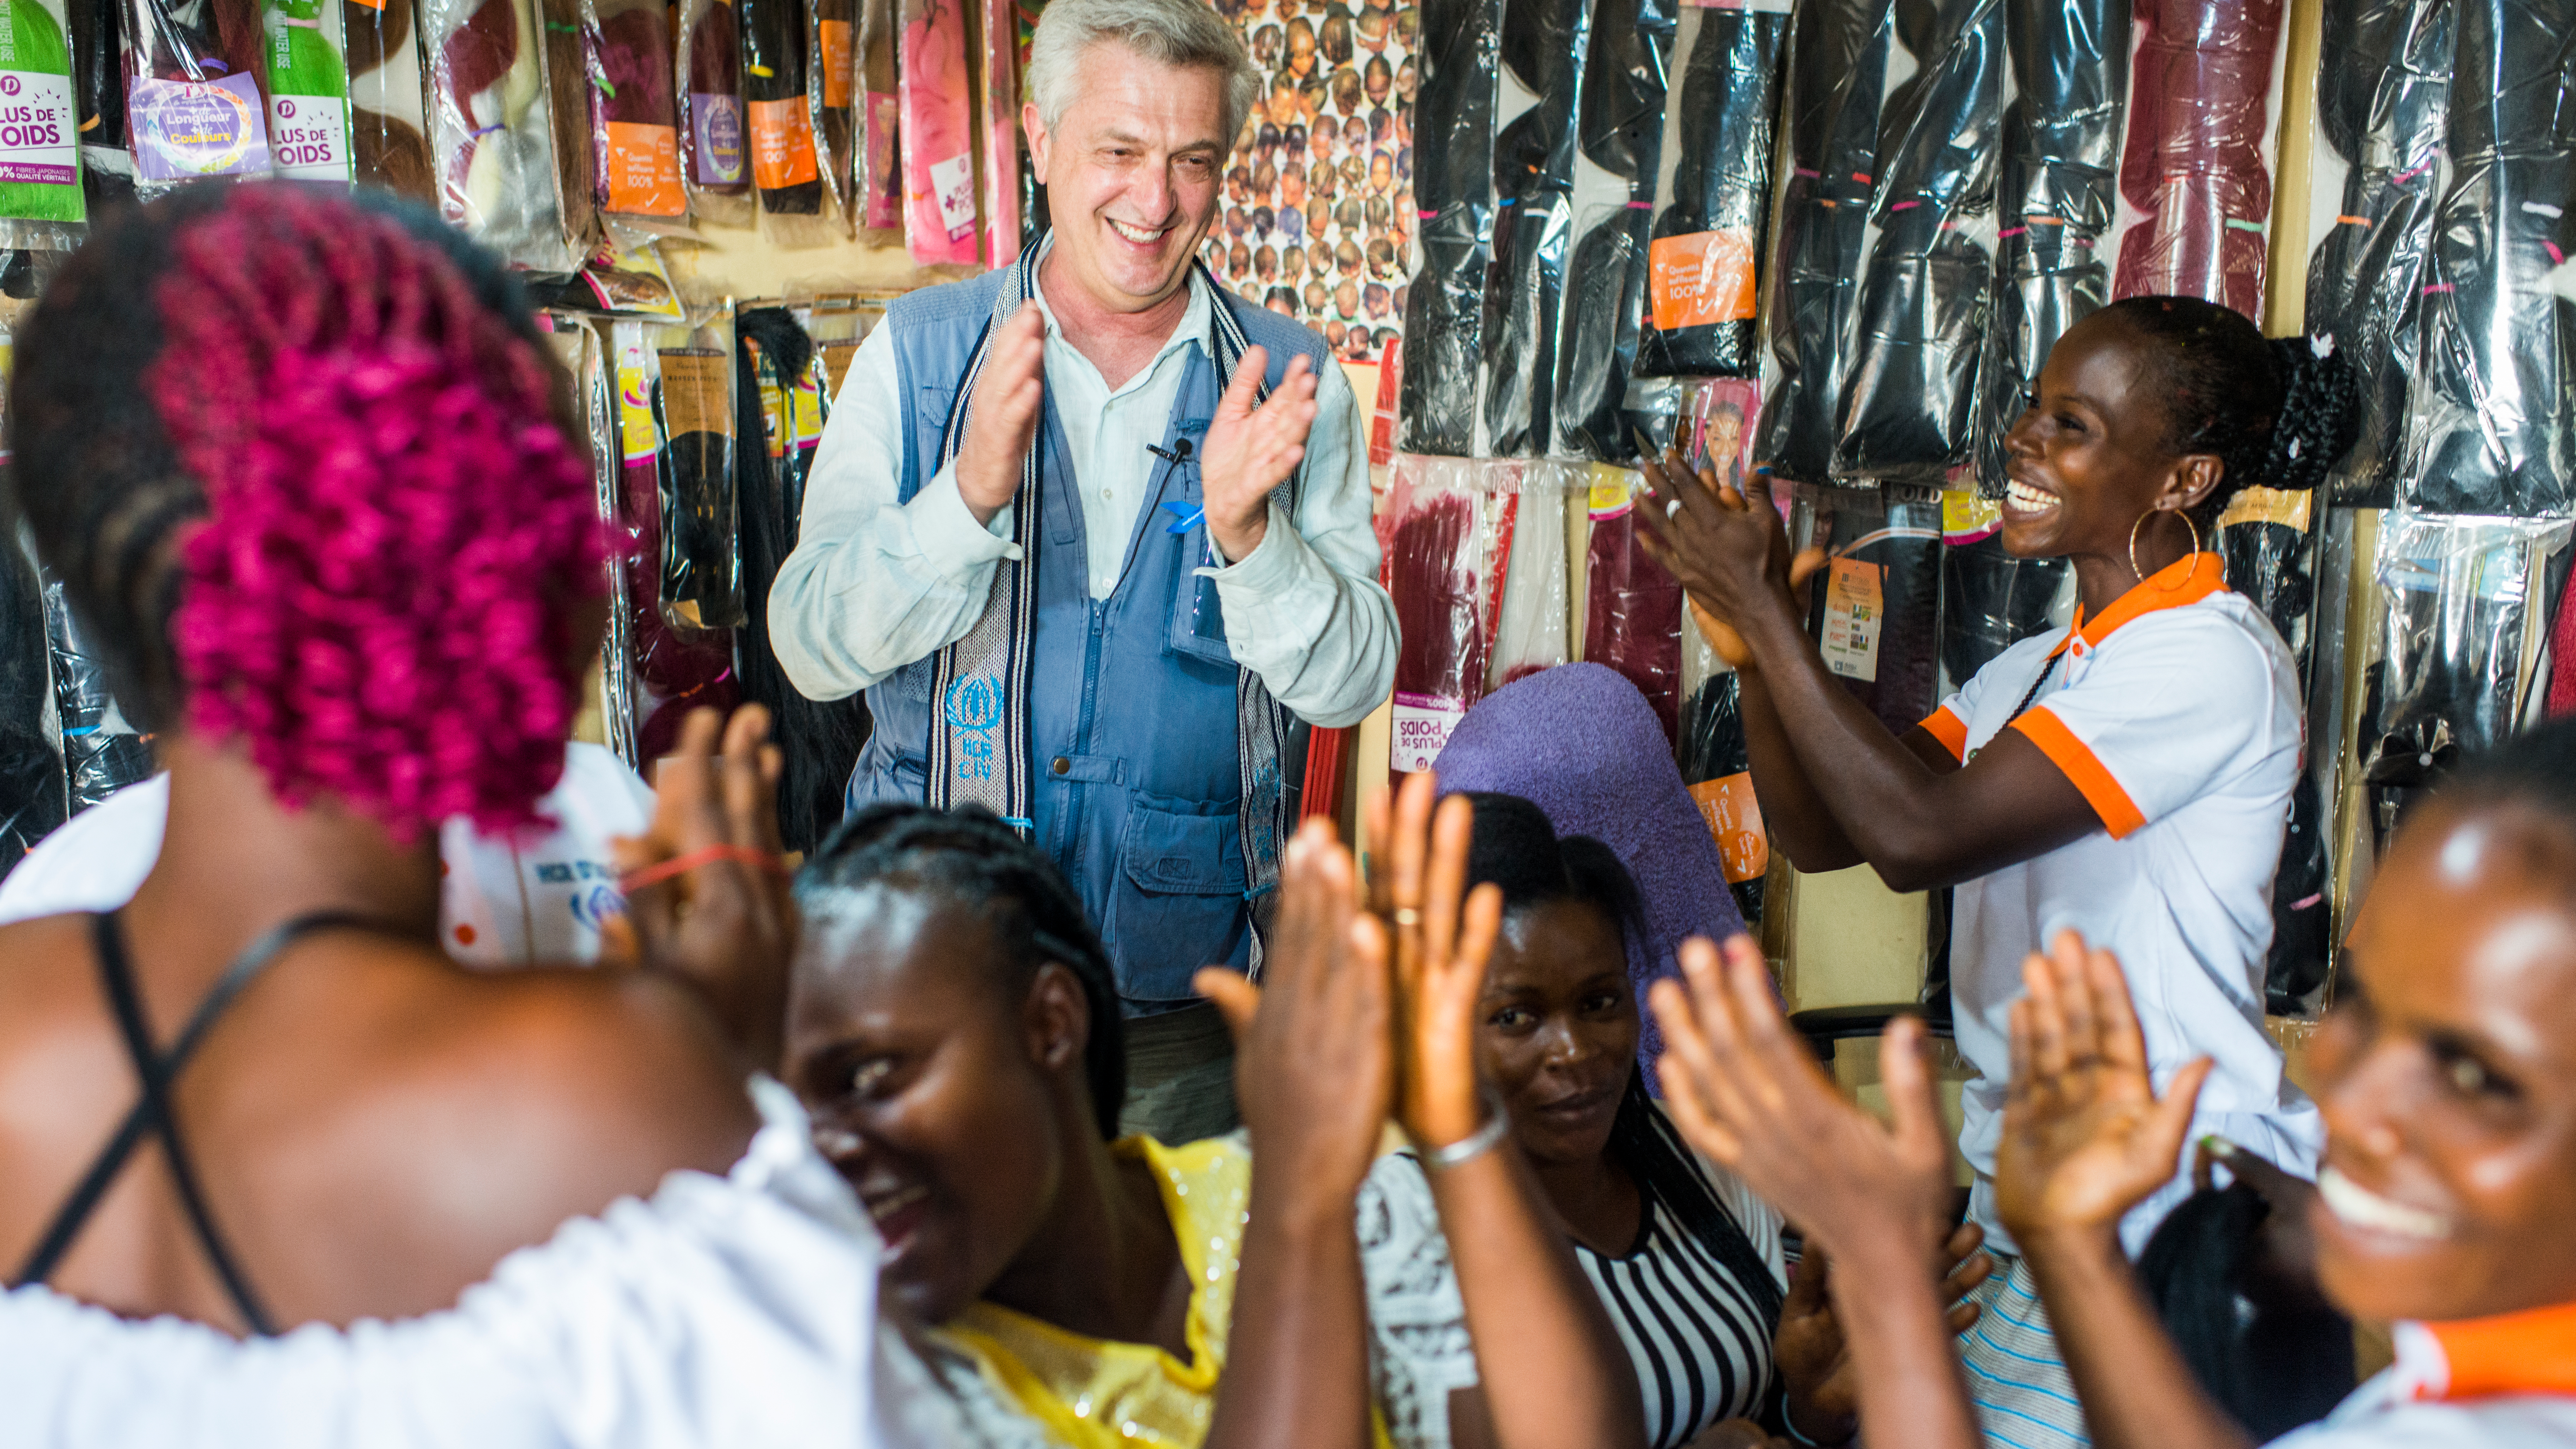 VN Hoge Commissaris voor de Vluchtelingen, Filippo Grandi, ontmoet teruggekeerde Ivoriaanse vluchtelinge Elodie Guei Sahe in haar kapsalon “Seatizi”, wat vrede betekent, dat ze mede dankzij steun van UNHCR kon openen. © UNHCR/Colin Delfosse